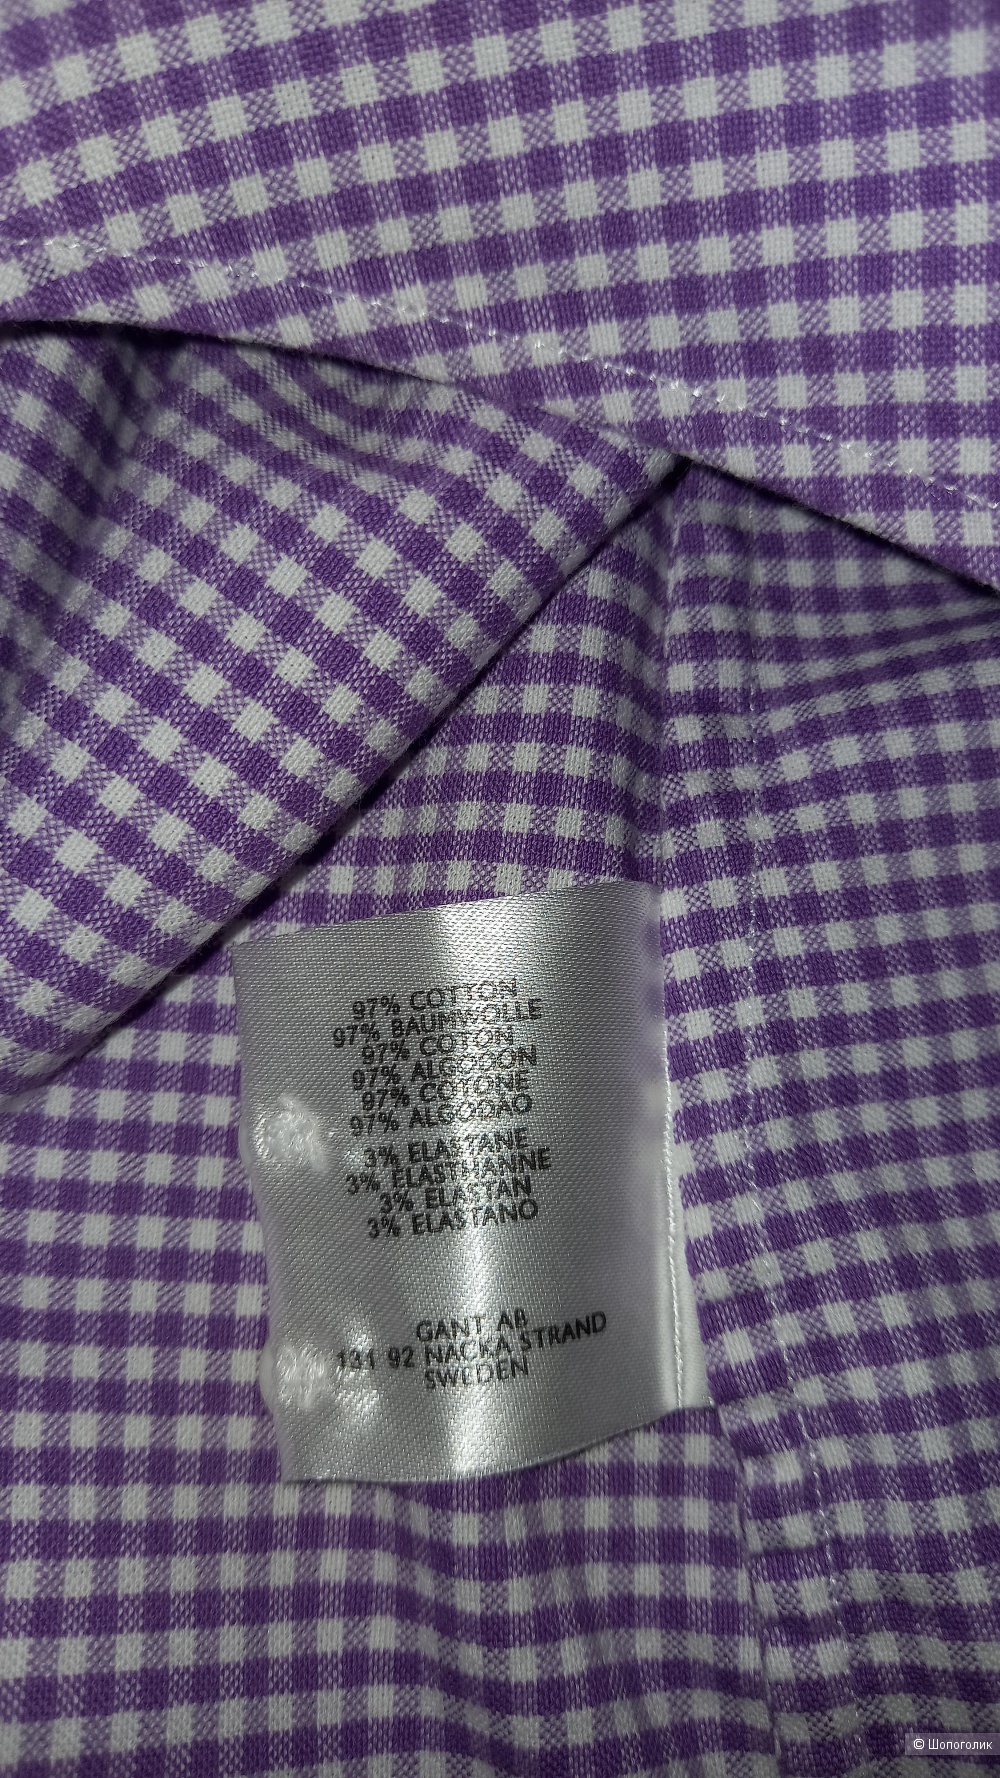 Рубашка Gant,44-46 размер